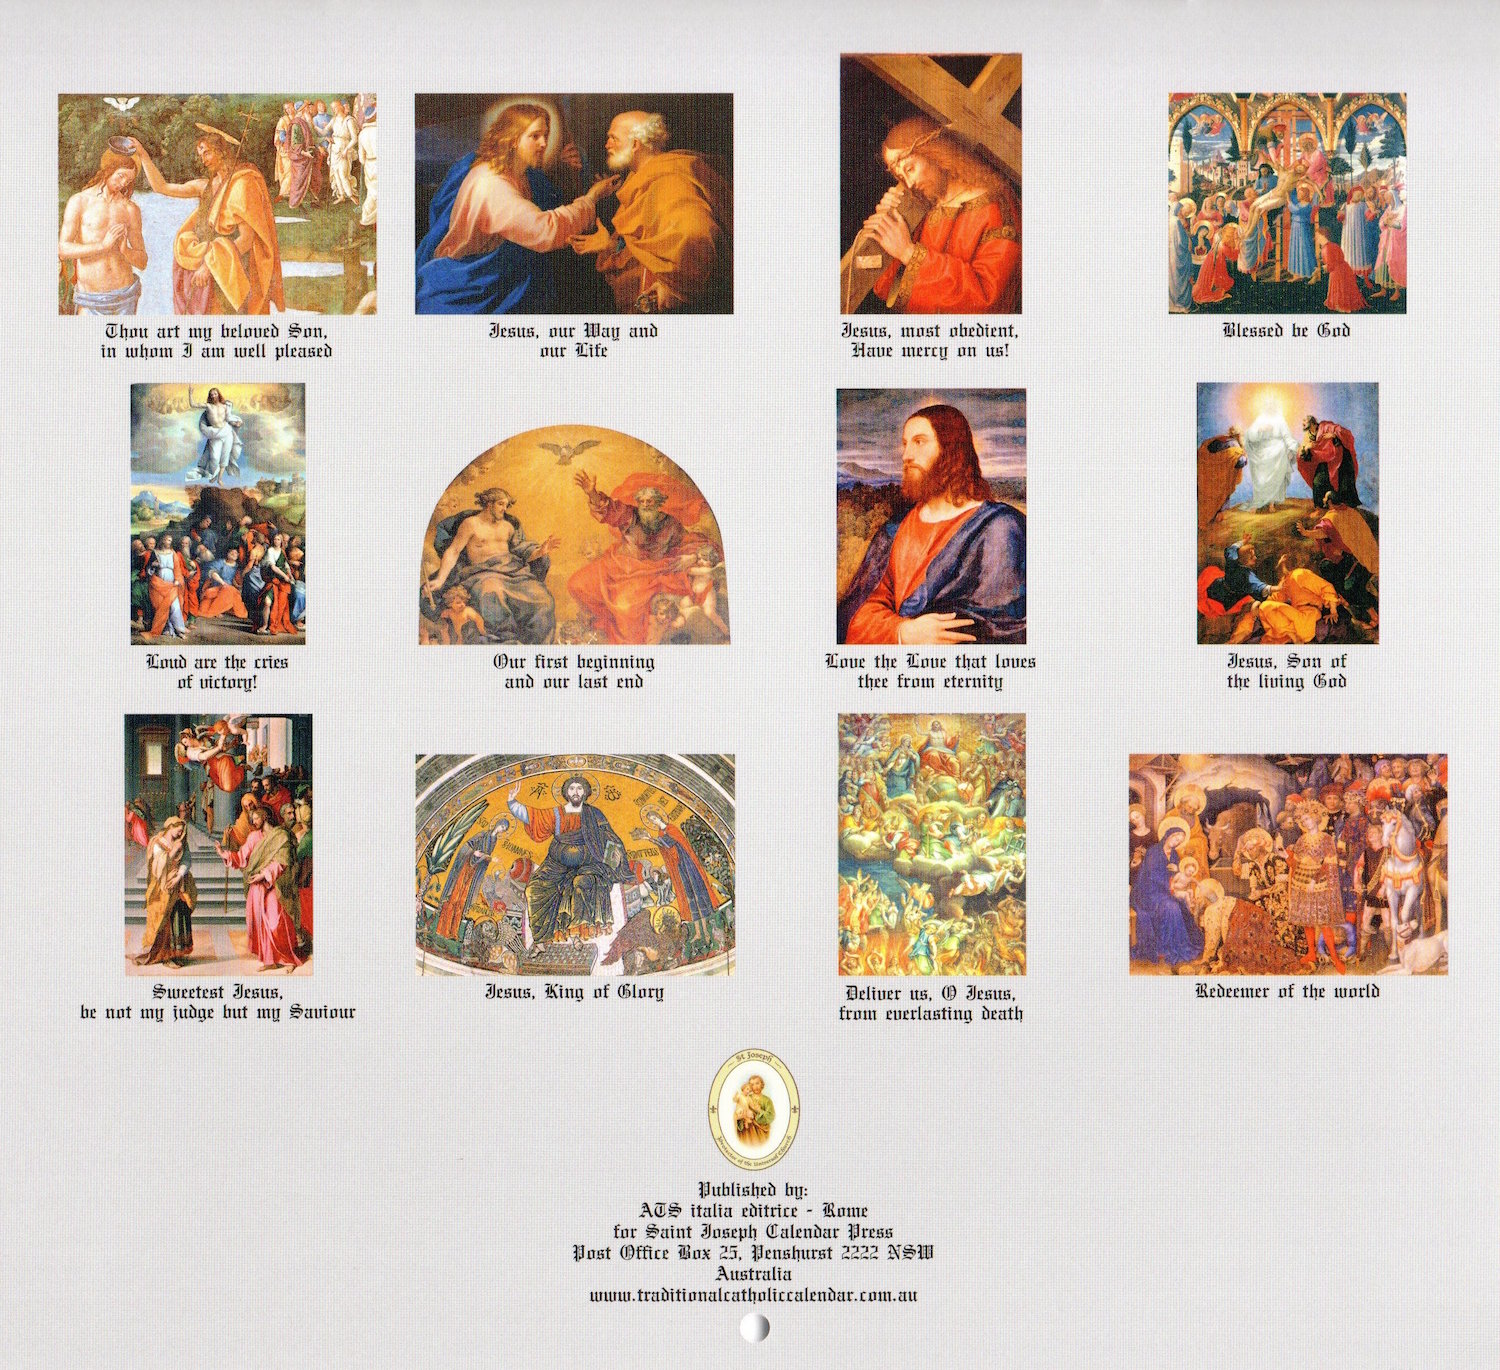 Saint Joseph Calendar Press Traditional Catholic Cards and Calendars